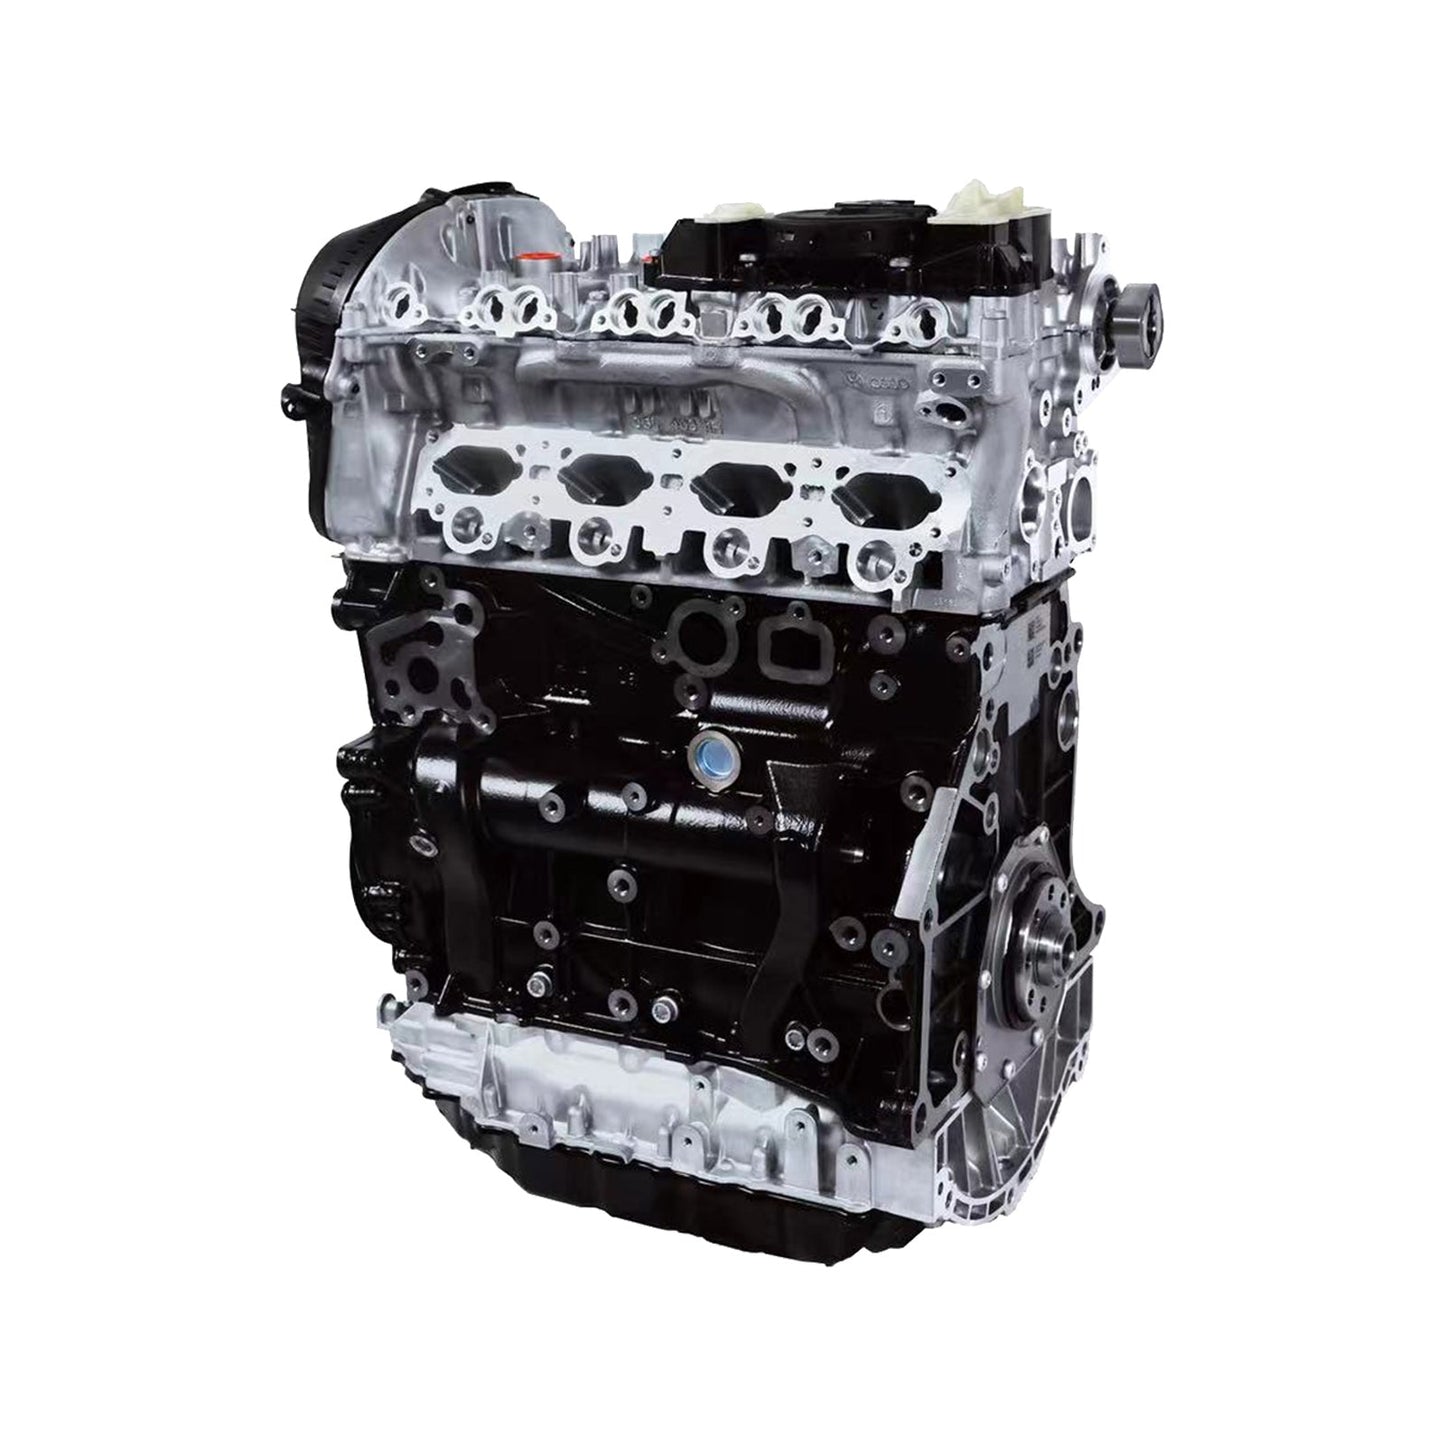 EA888 GEN3 1.8T CJS Car Engine Assembly 06K100032H 06K100037N 06K100033B